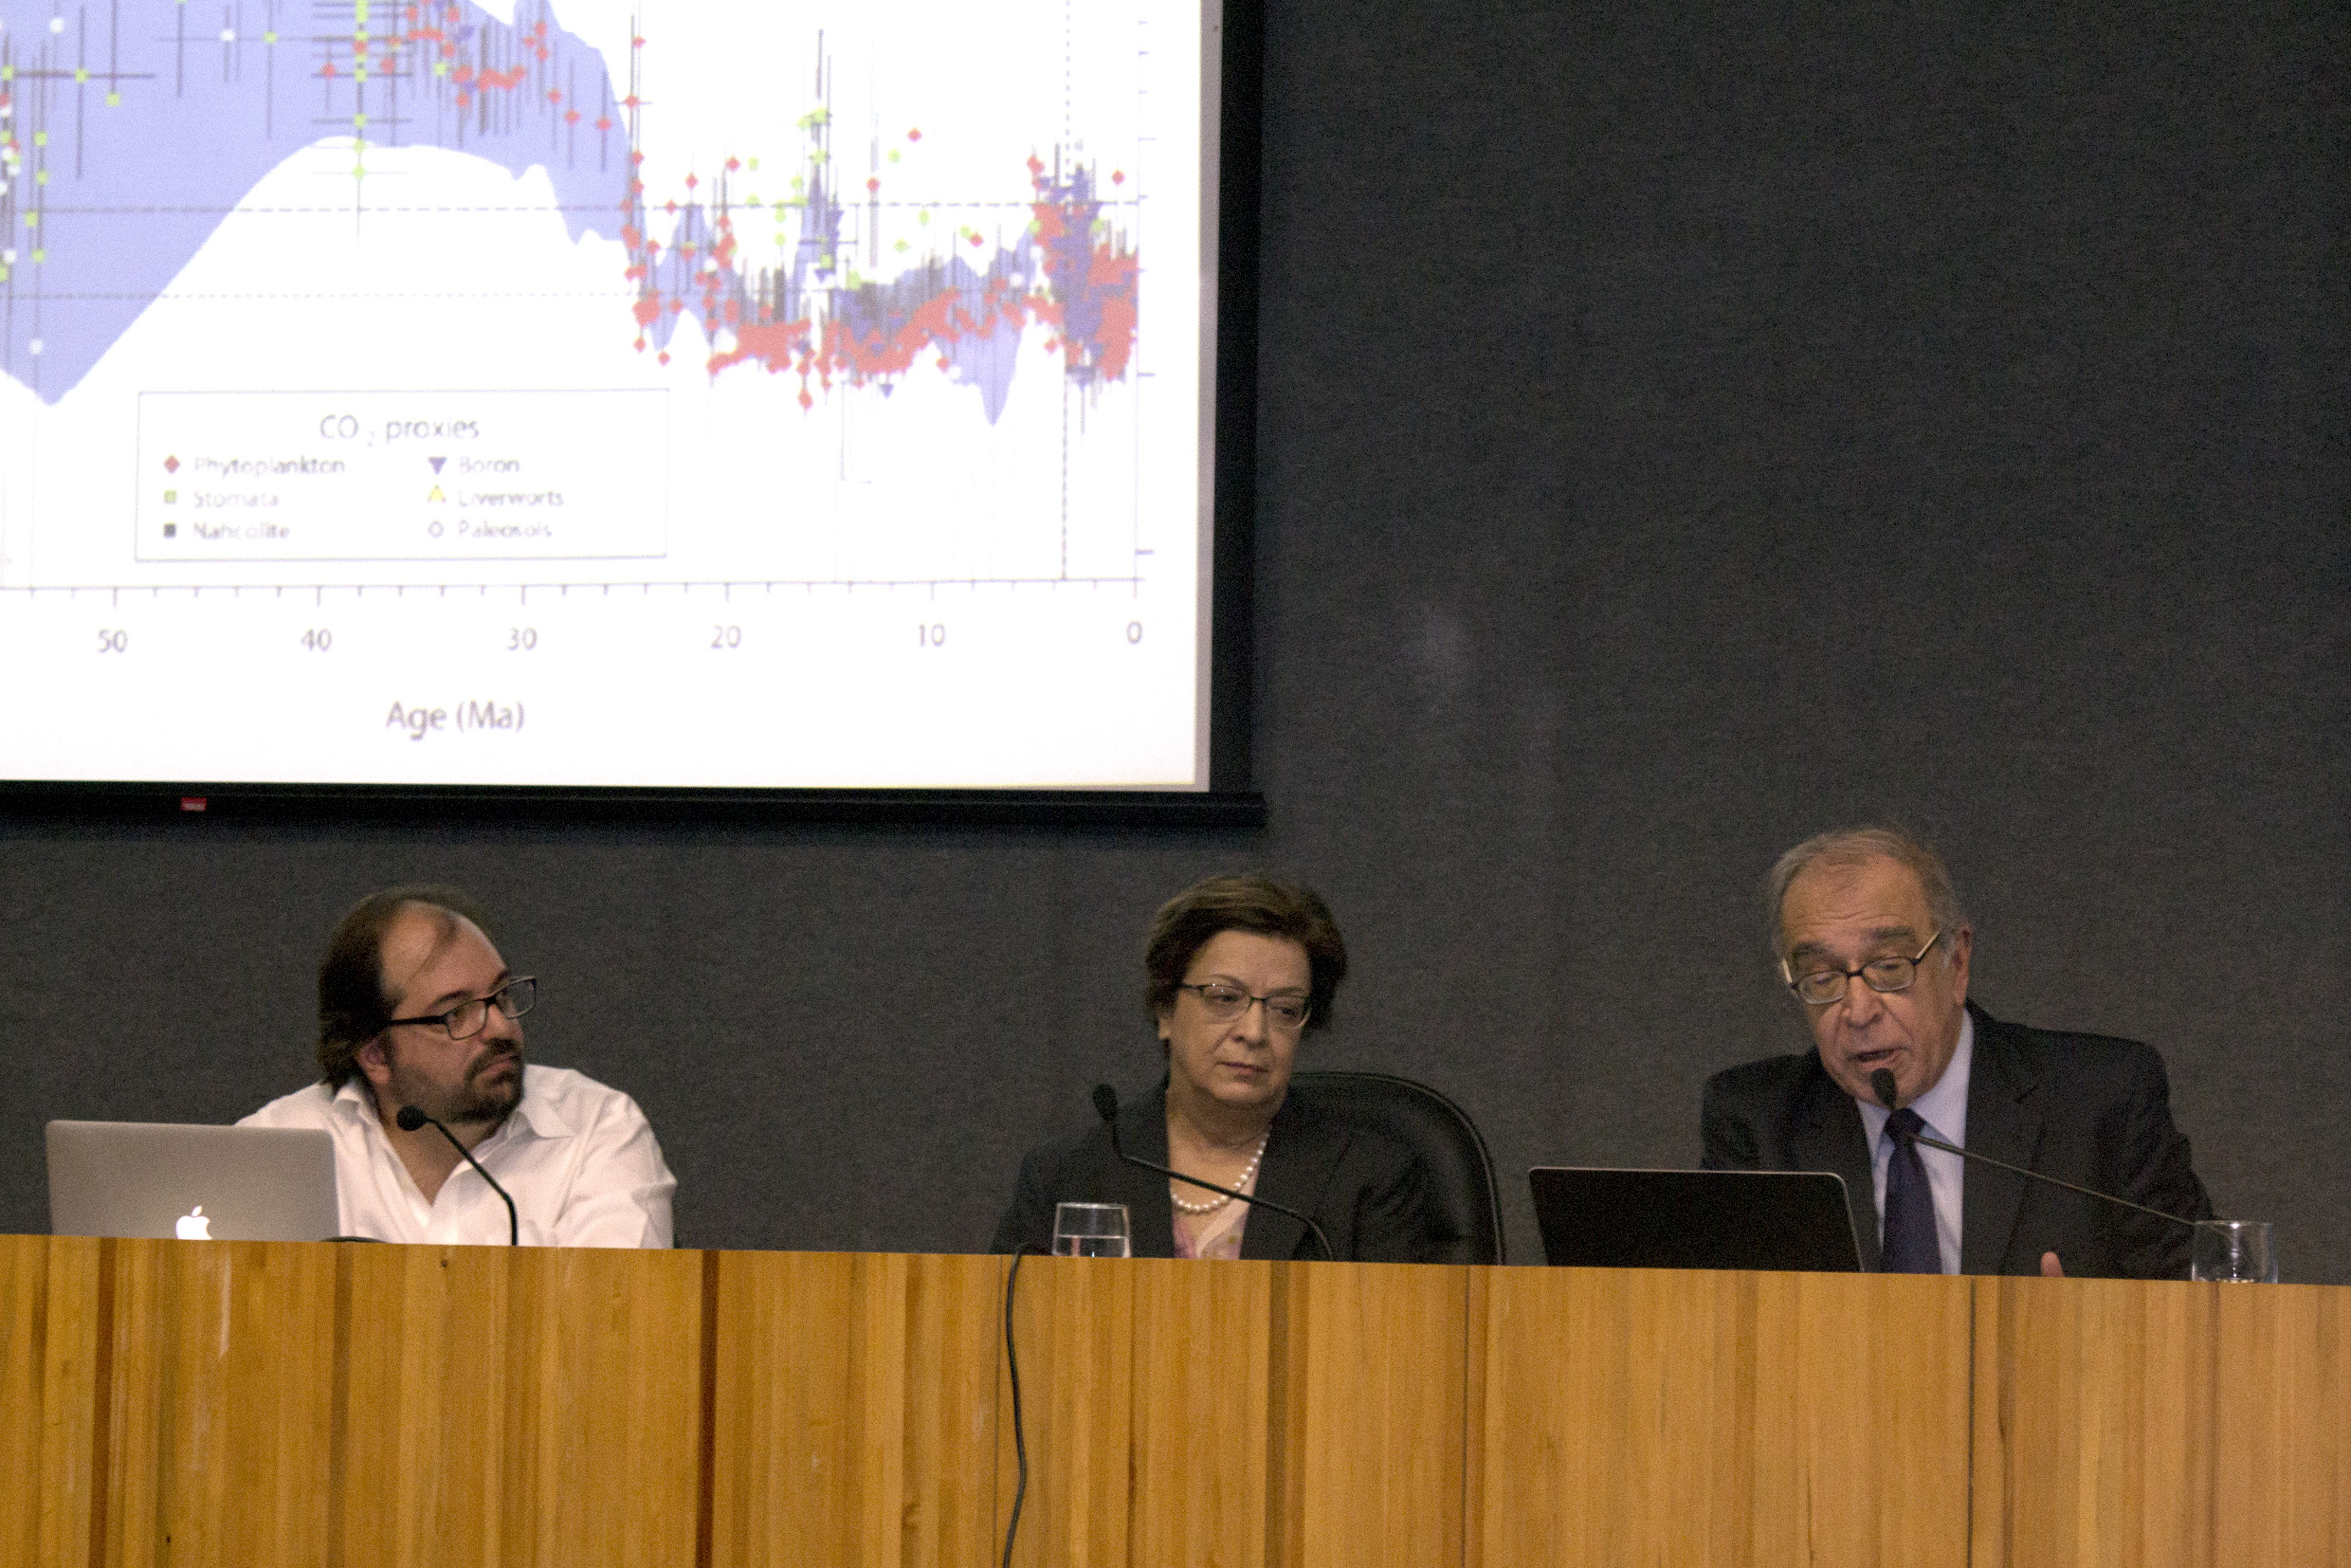 Conferência com Tiago Quental e Luiz Gylvan Meira Filho com mediação de Vera Lúcia Imperatriz Fonseca - 22 de abril de 2015